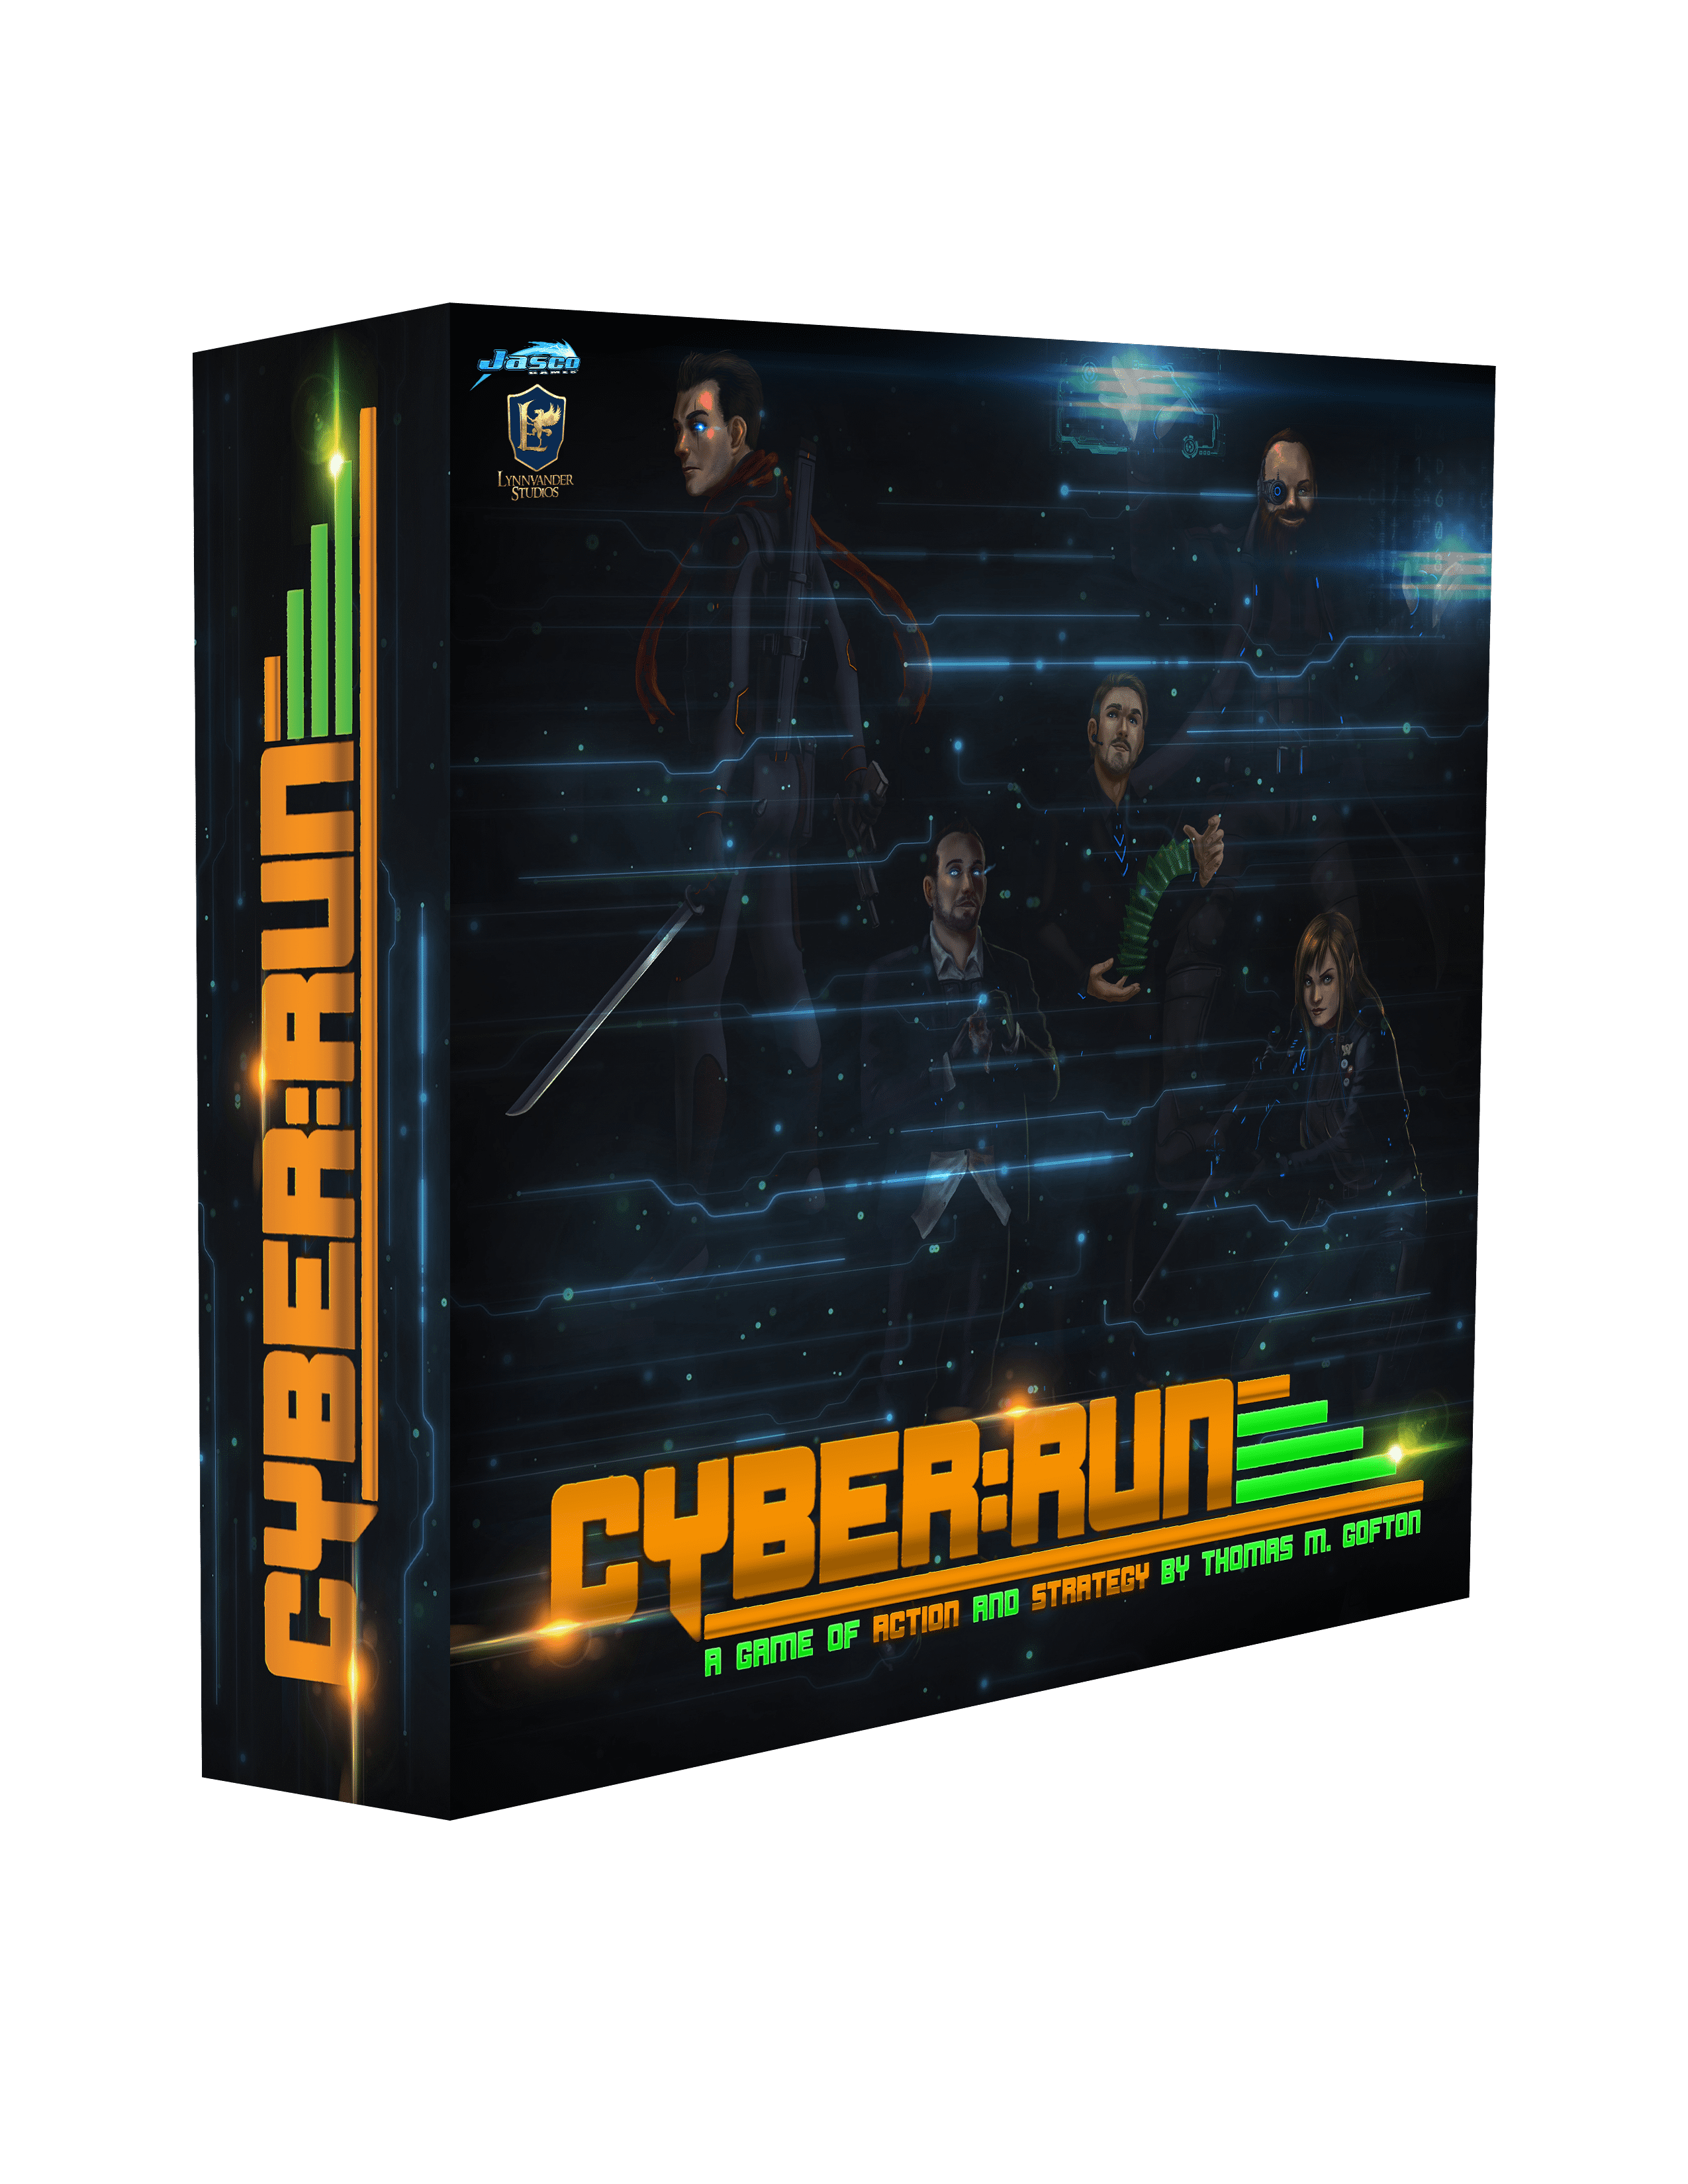 Cyber:Run